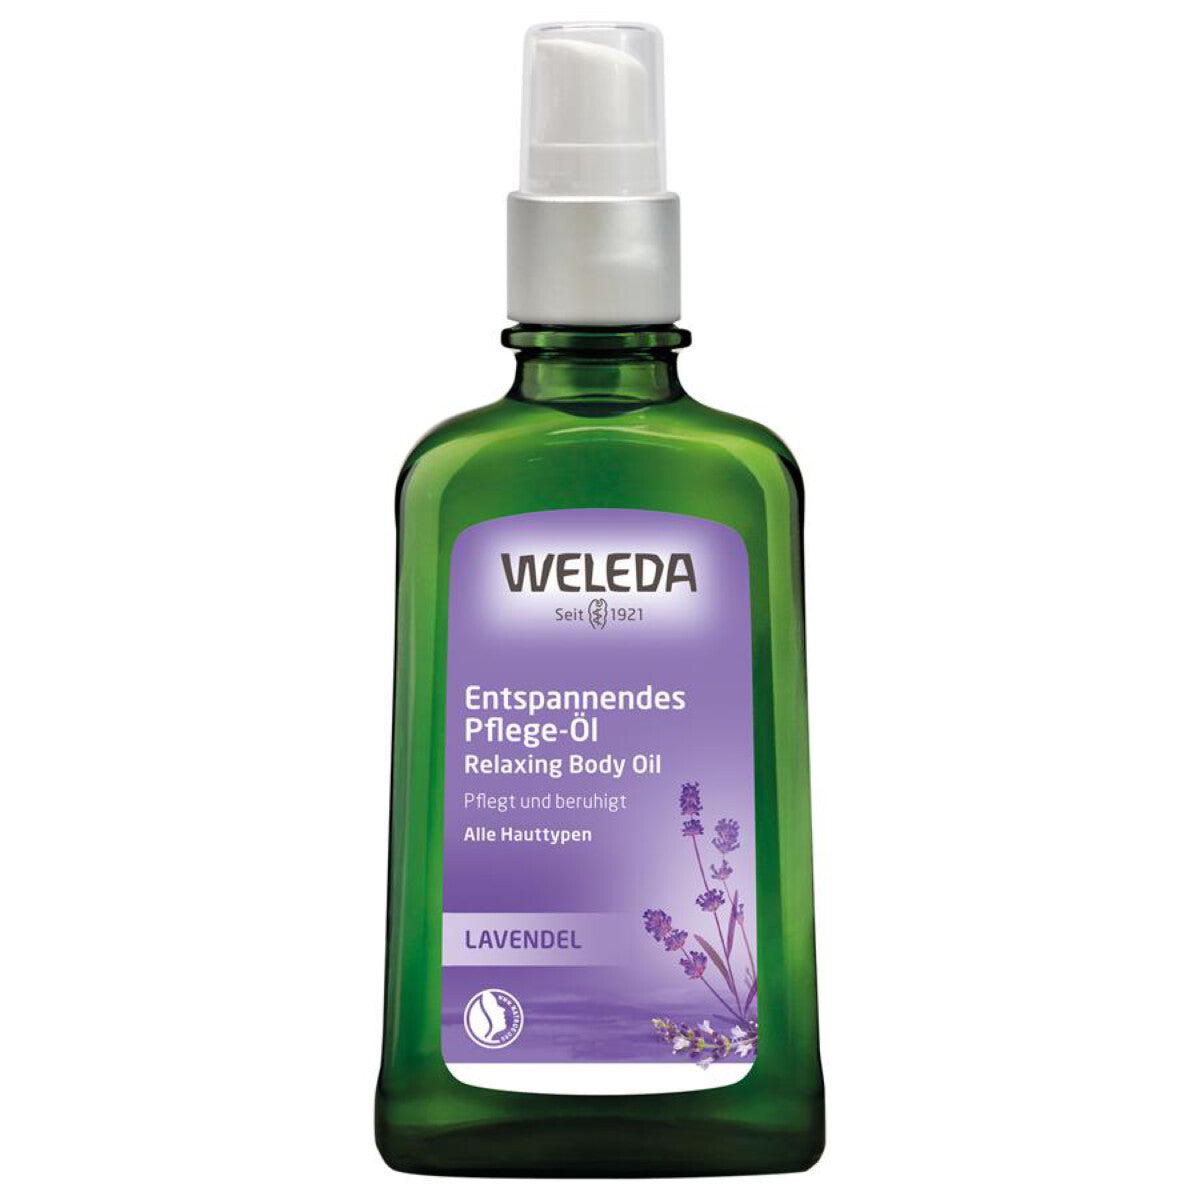 WELEDA Lavendel Pflegeöl - 100 ml